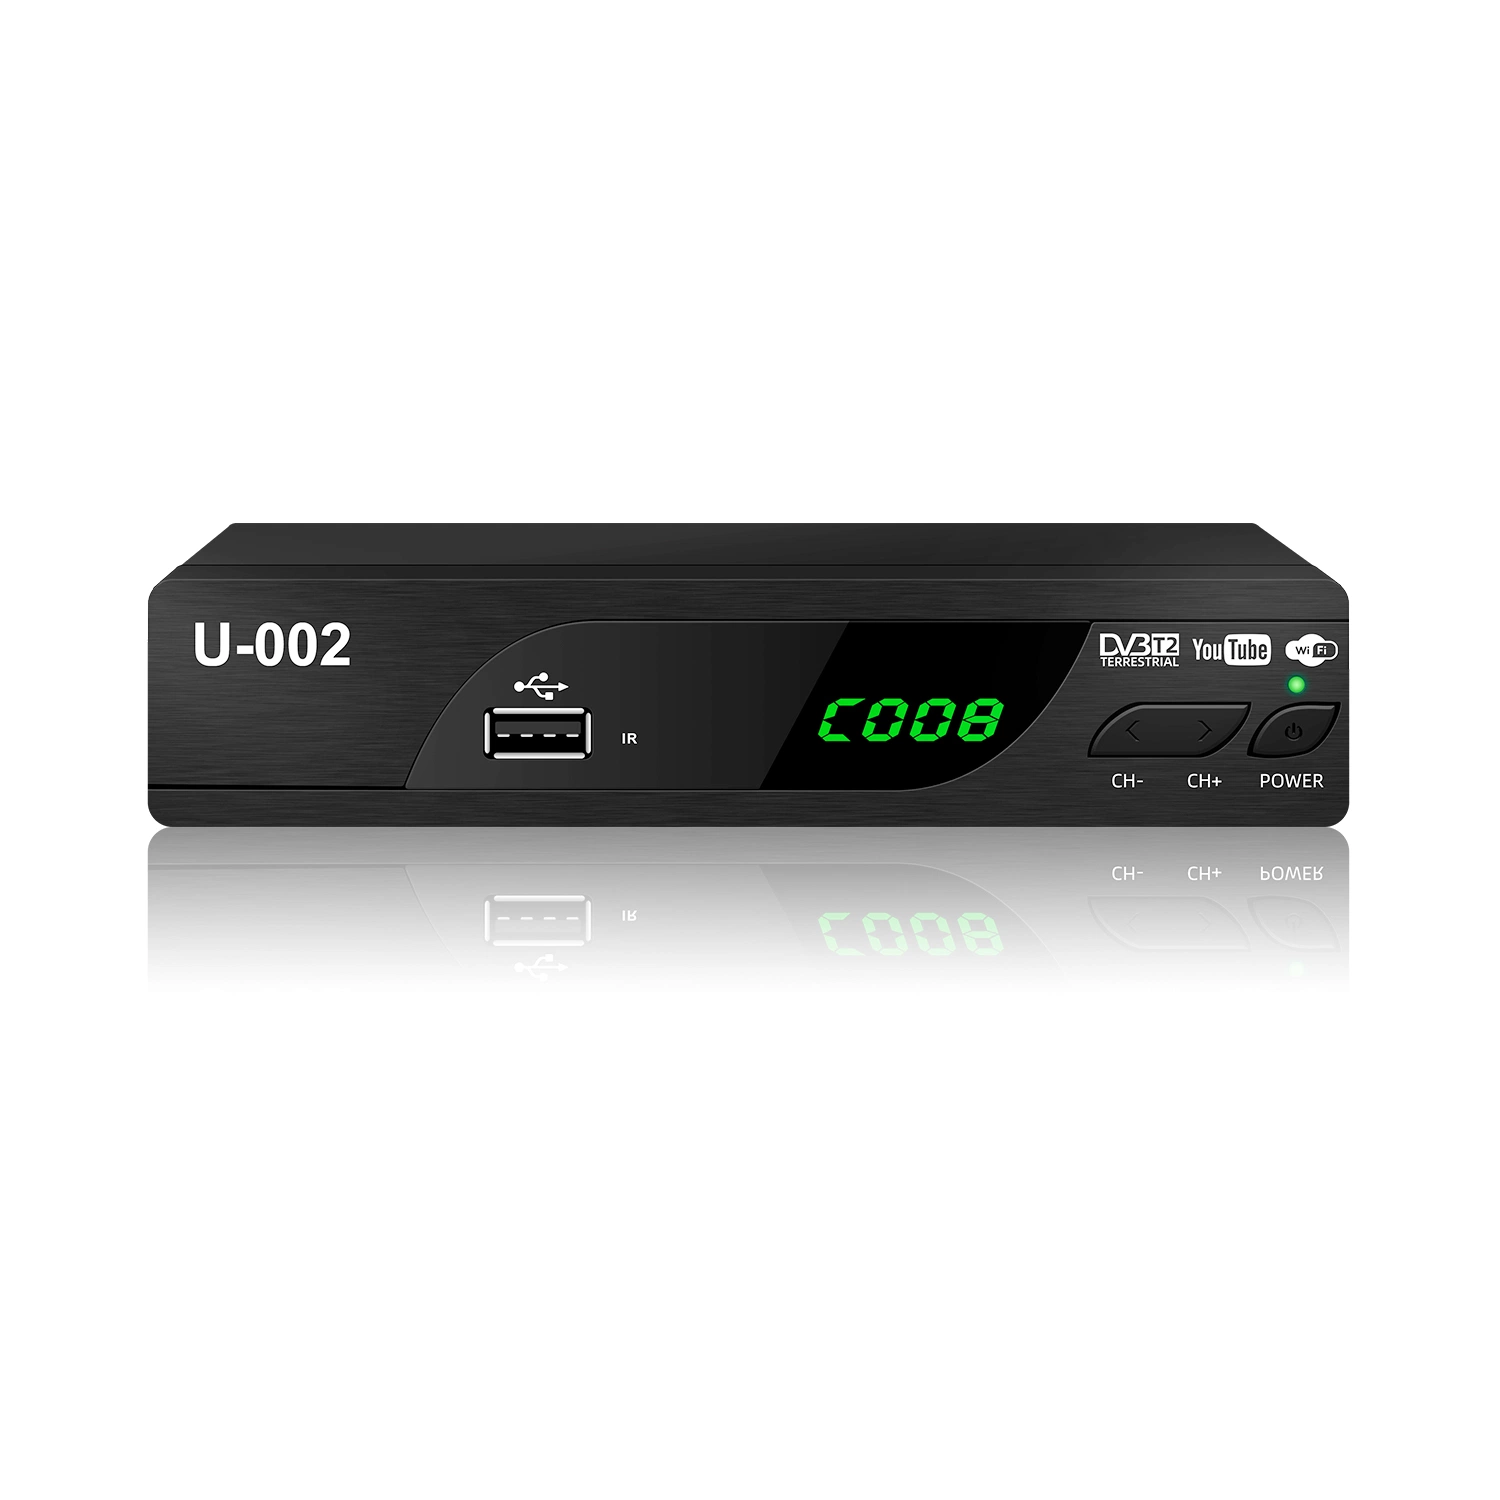 DVB-T2 MPEG4 H. 264 Full HD receptor de TDT USB Digital DVB T2 Decodificador.